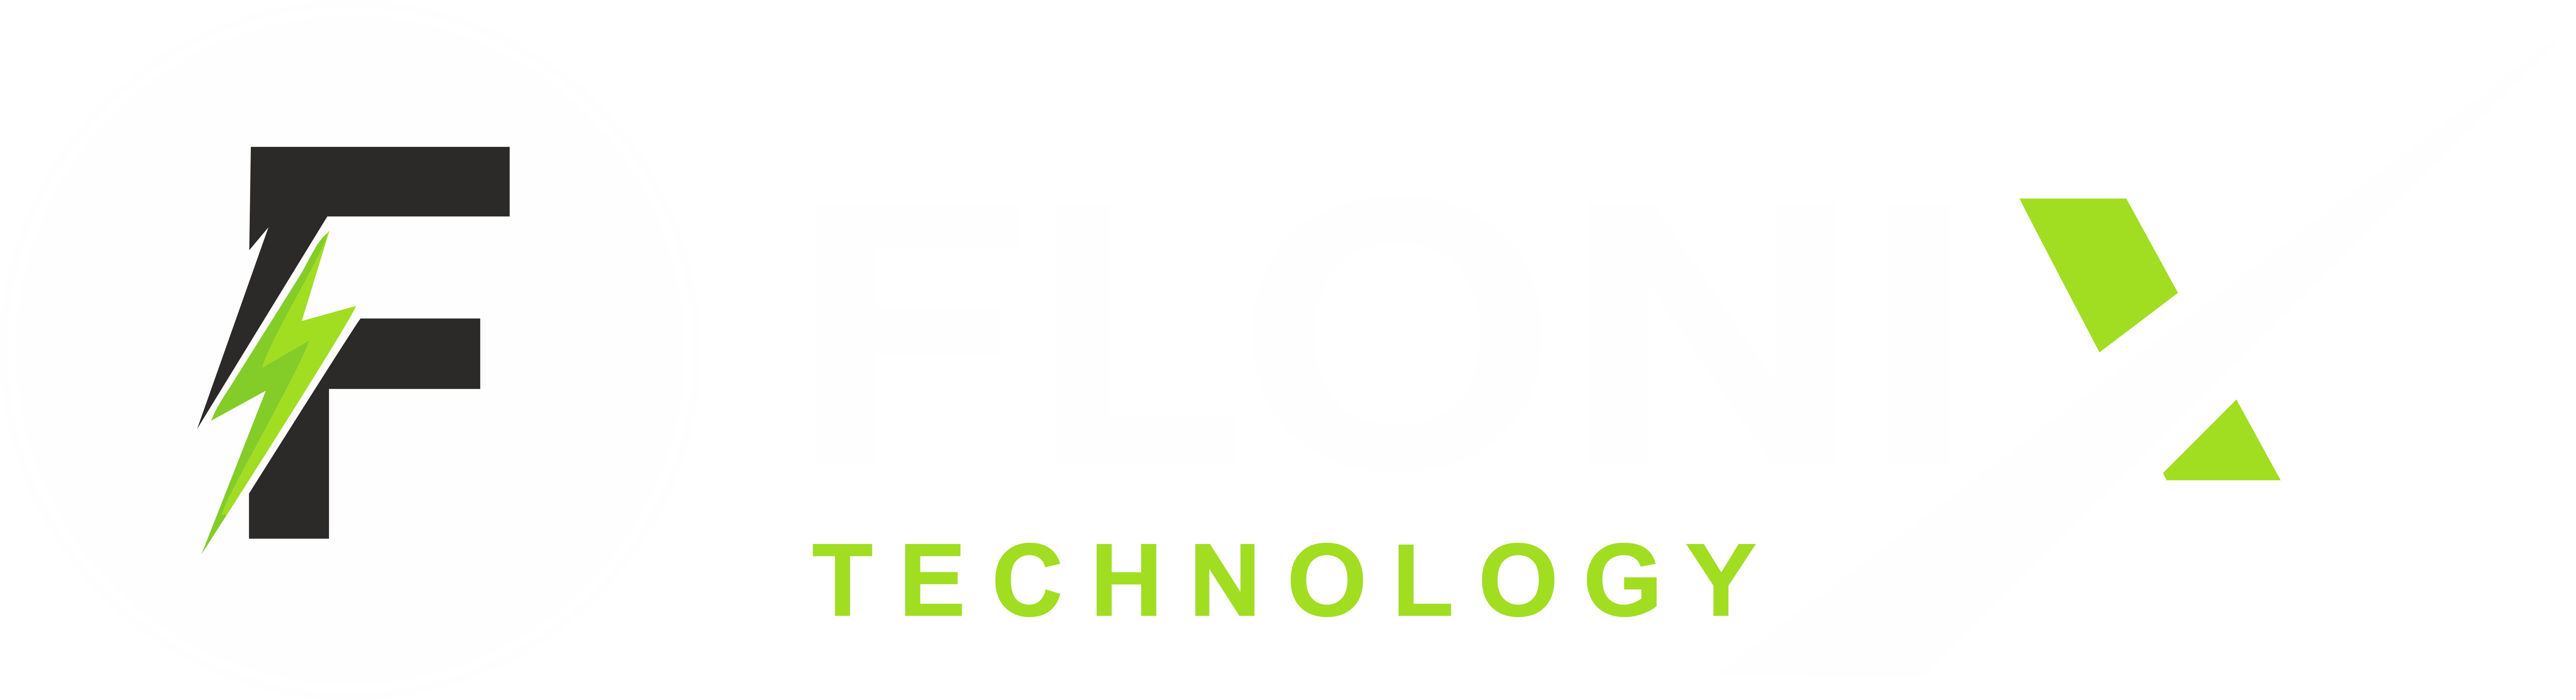 Flonix Technology Logo